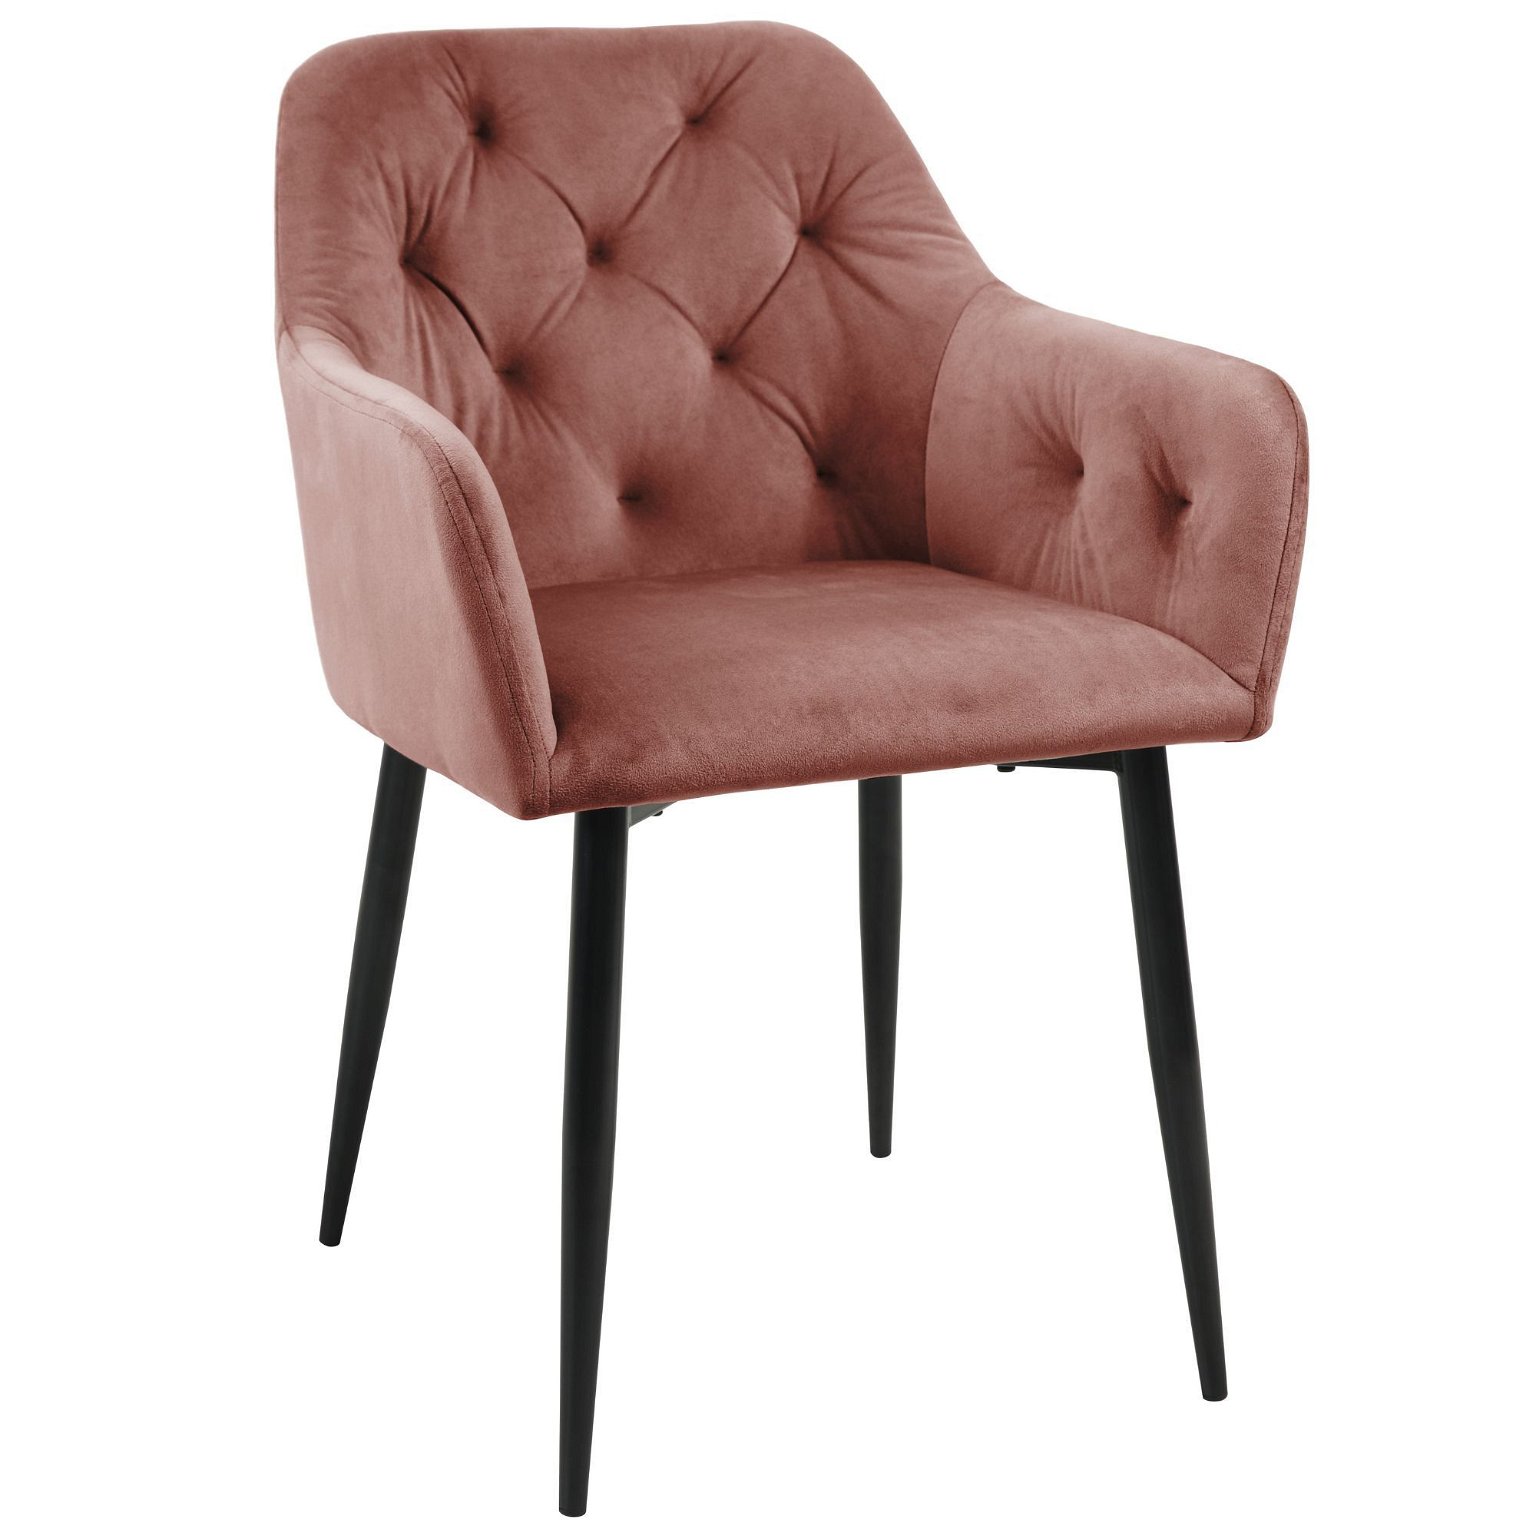 2-jų kėdžių komplektas SJ.030, rožinė